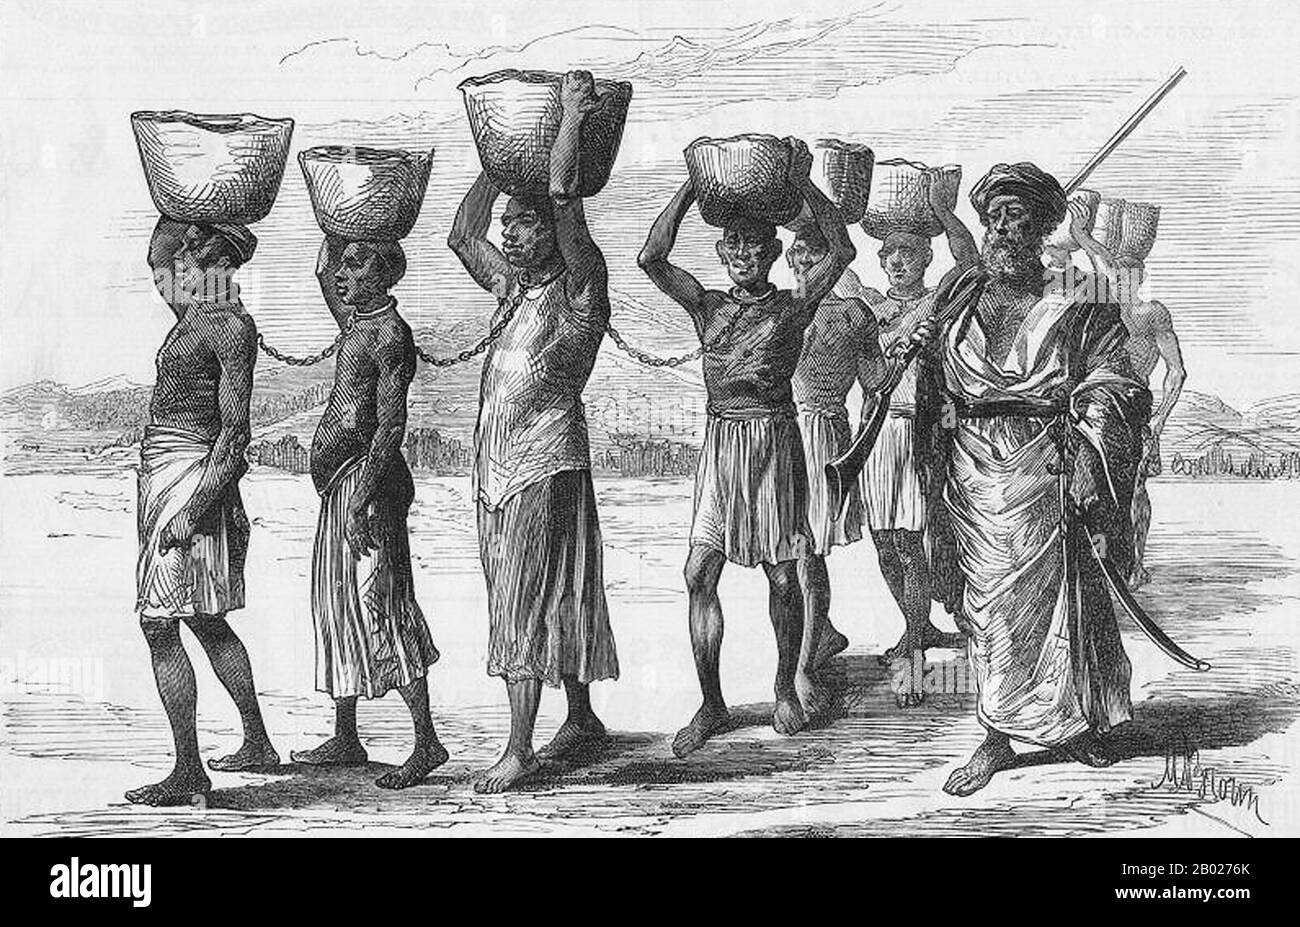 Nel 1698, Zanzibar cadde sotto il controllo del Sultanato dell'Oman. Fino a circa 1890, i sultani di Zanzibar controllavano una parte sostanziale della costa dell'Africa orientale, nota come Zanj, che comprendeva Mombasa, Dar es Salaam, e le rotte commerciali che si estendono molto più lontano nell'entroterra, come la rotta che conduce a Kindu sul fiume Congo. I sultani hanno sviluppato un'economia di scambi commerciali e colture in contanti nell'arcipelago di Zanzibar con una élite araba dominante. L'Ivory è stato un grande bene commerciale. L'arcipelago, conosciuto anche come le Isole delle Spezie, era famoso in tutto il mondo per i suoi chiodi di garofano e altre spezie, e le piantagioni sono state avvilate Foto Stock